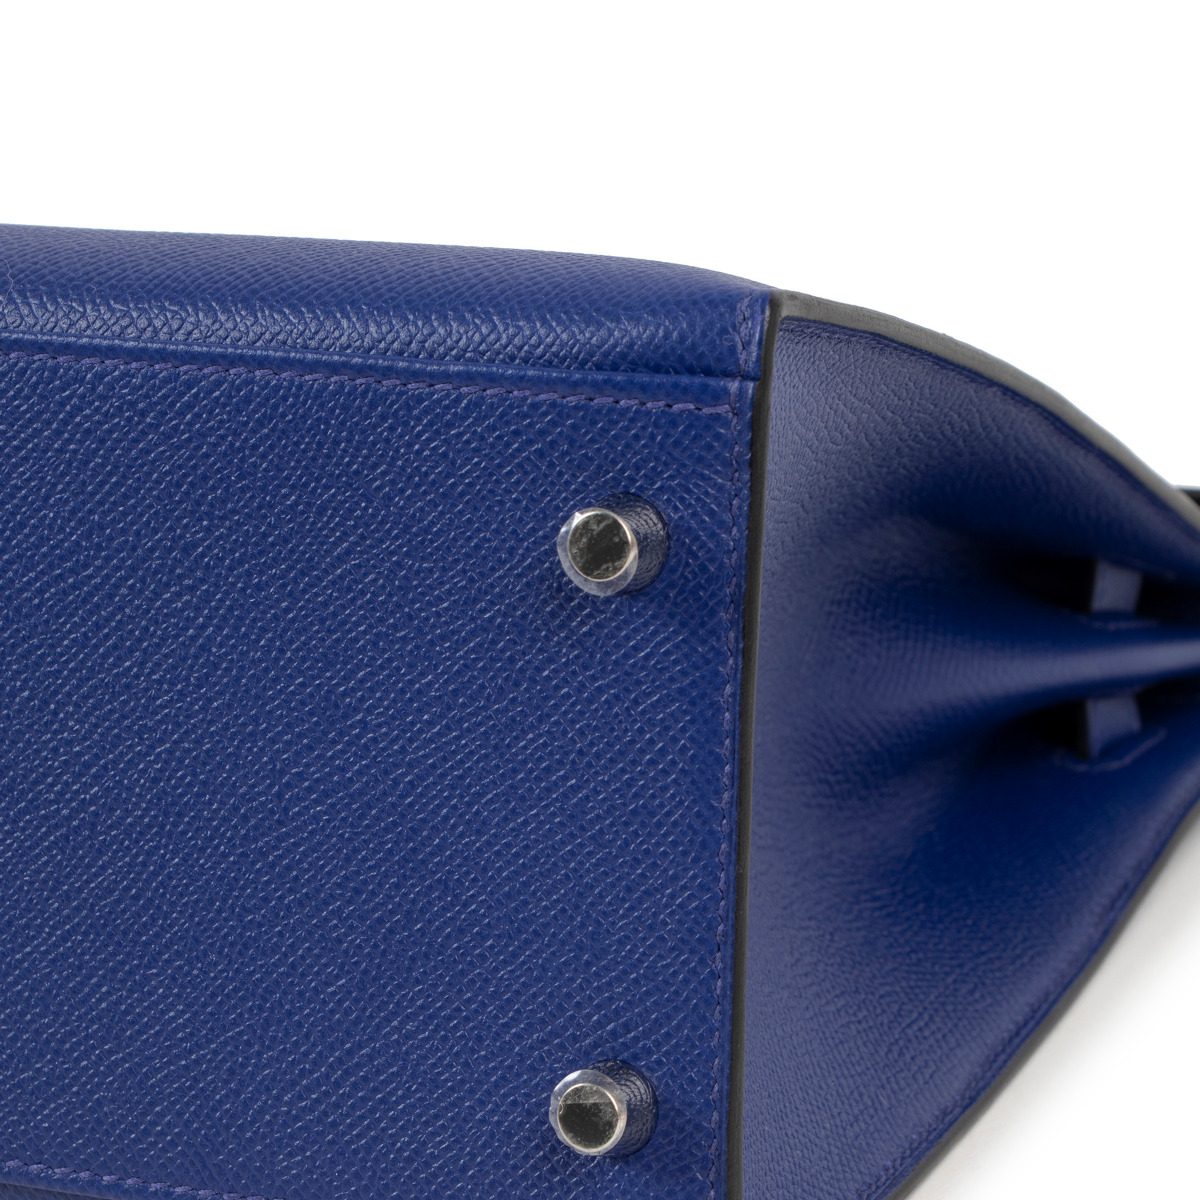 Hermès Kelly HSS 25 Gris Mouette/Bleu Electrique Sellier Epsom Palladium  Hardware PHW